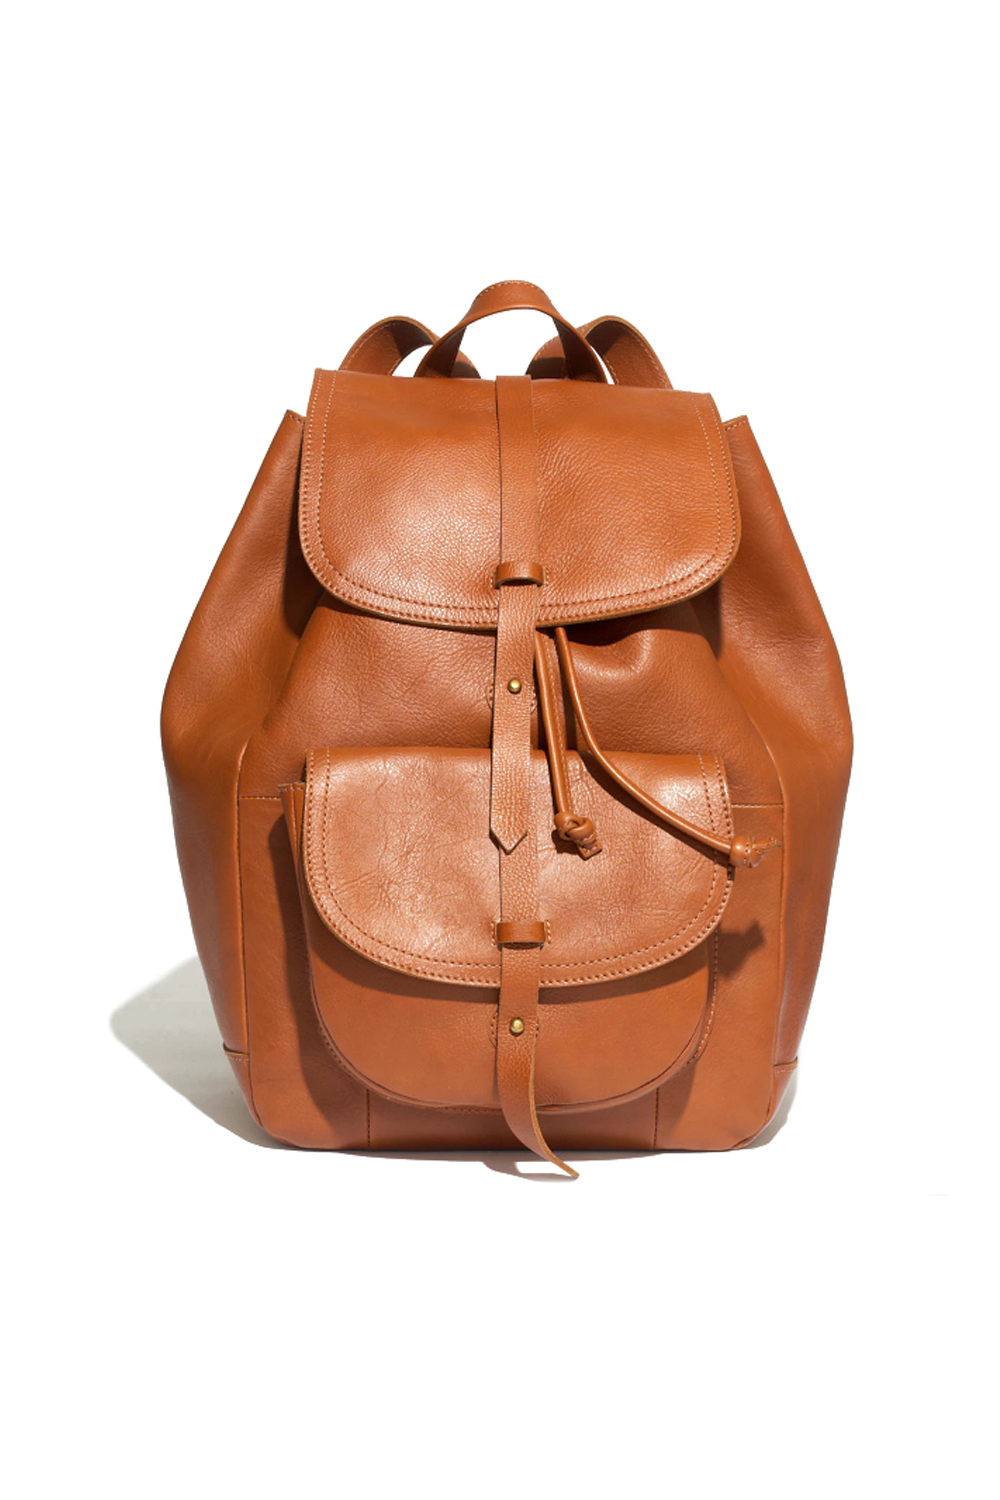 18 Best Backpacks For Women 21 Stylish Luxury Backpacks